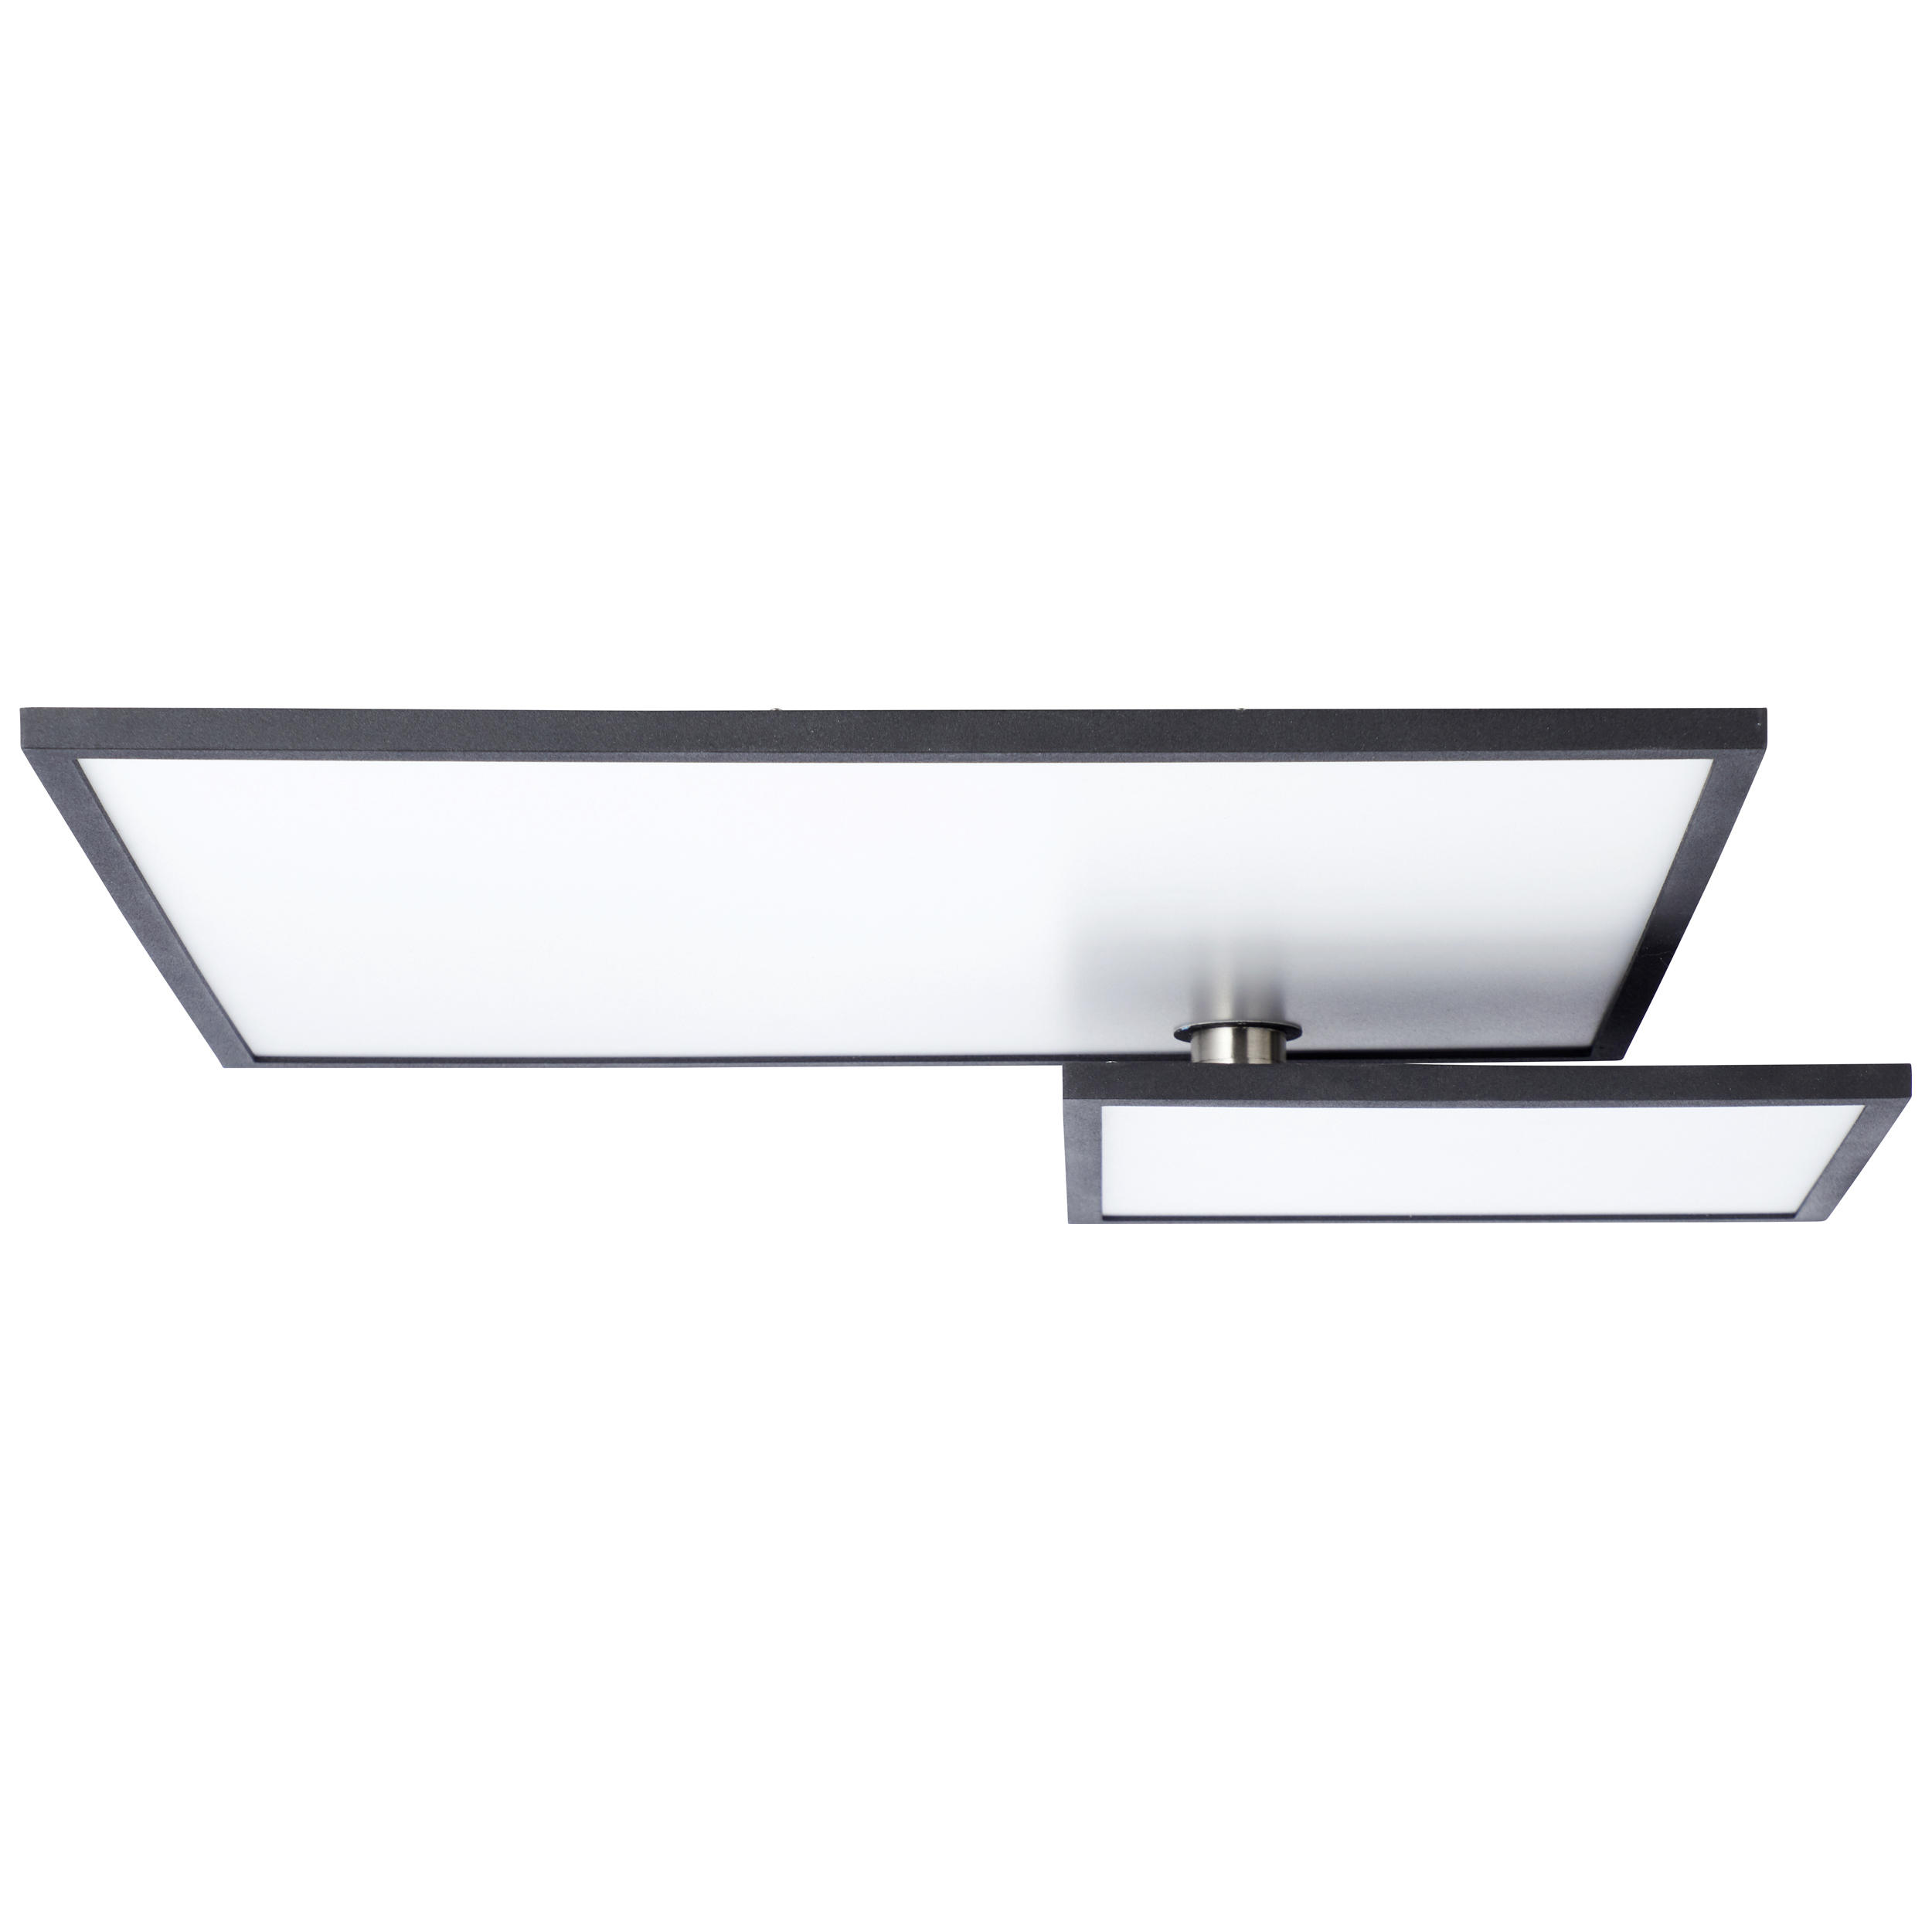 LED-DECKENLEUCHTE Bility  - Schwarz/Weiß, Design, Kunststoff/Metall (45/45/9cm)